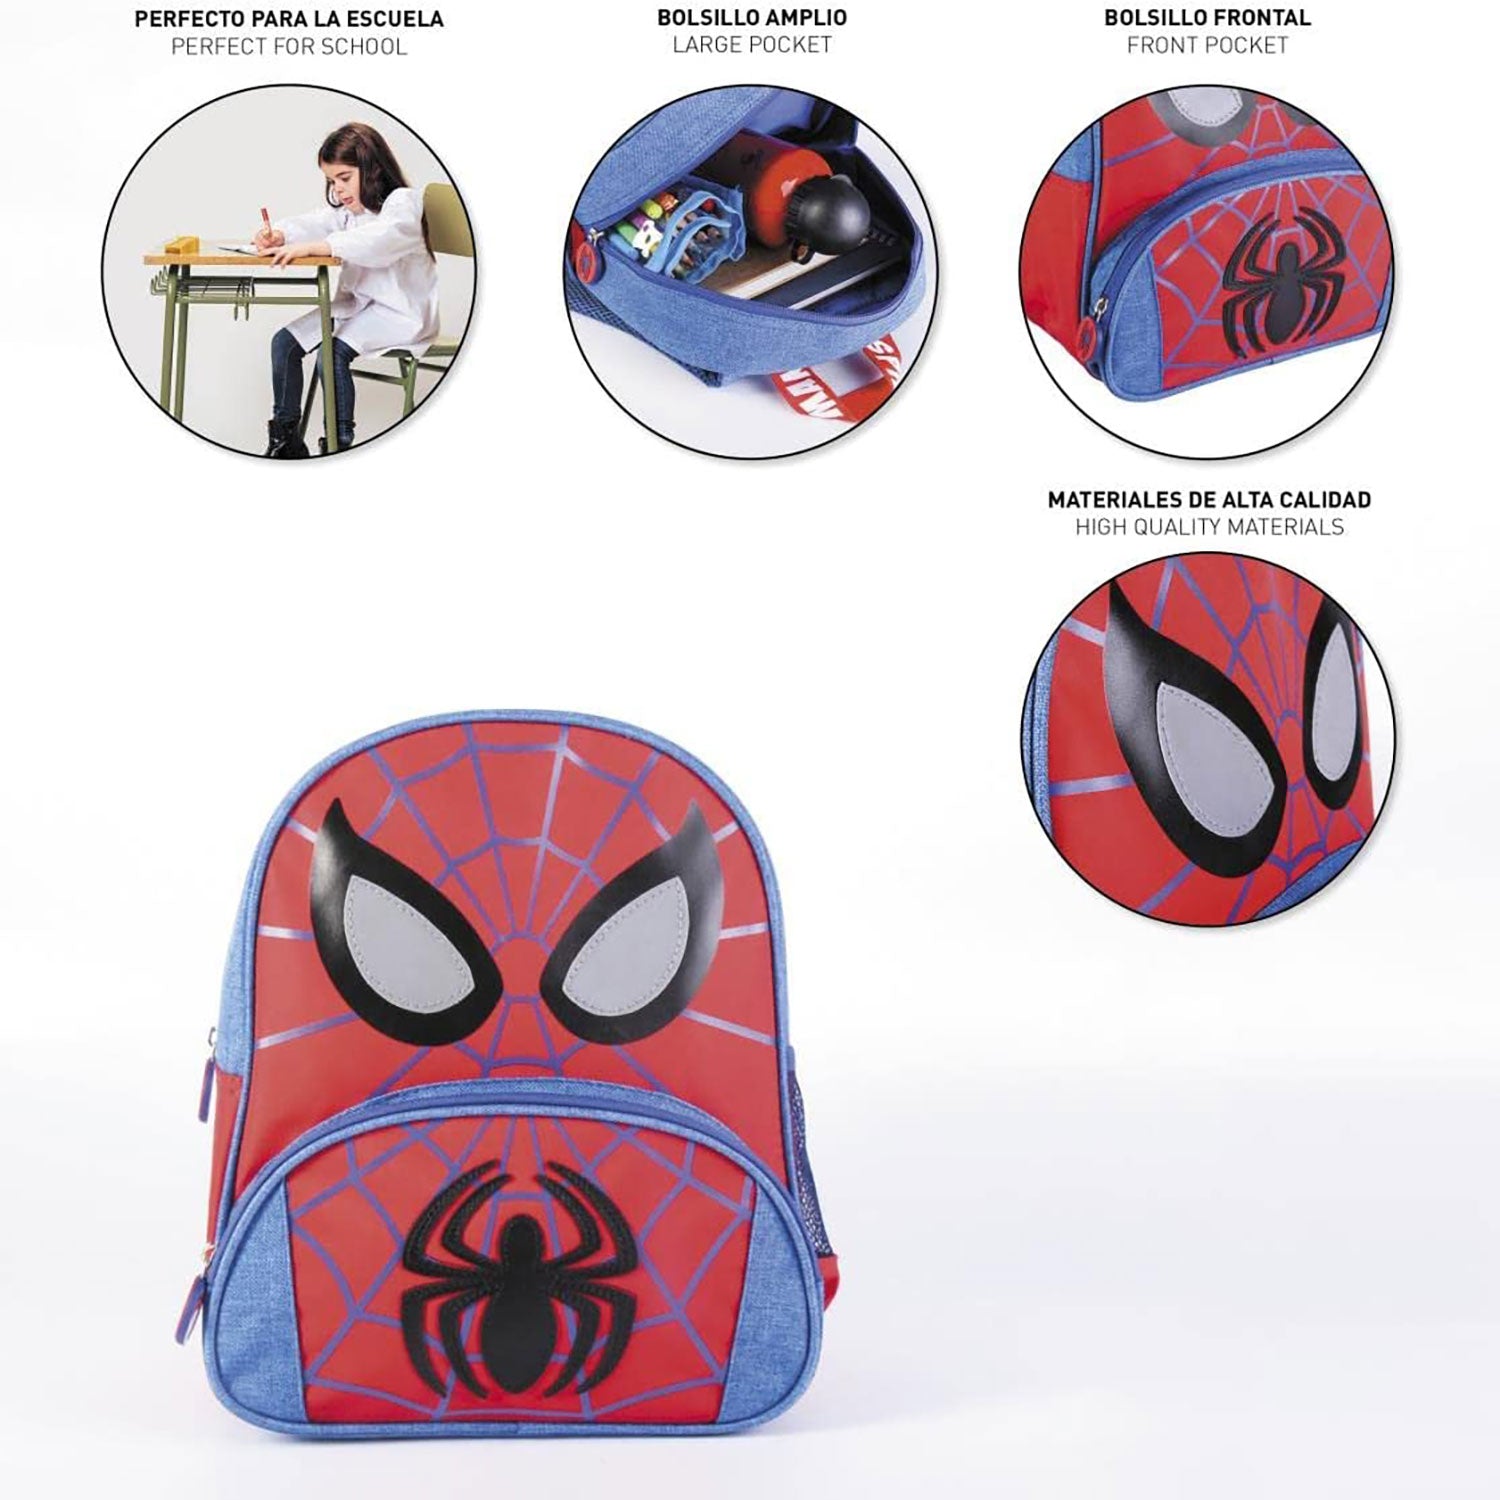 Zaino Marvel Spiderman zainetto ufficiale con bretelle bambino scuola asilo 5543